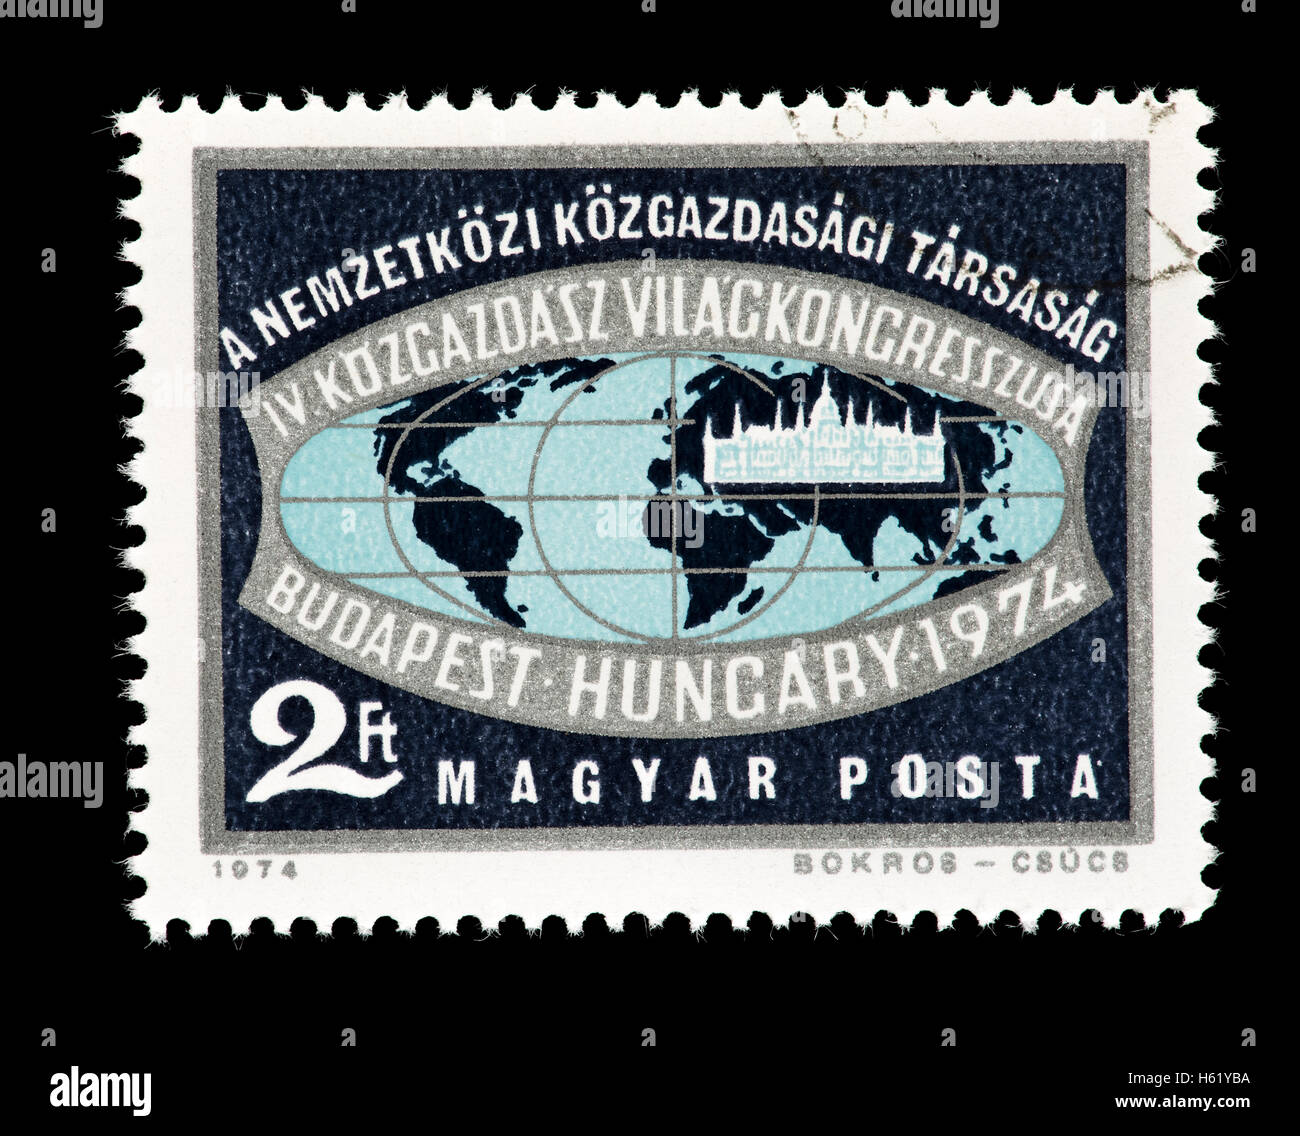 Francobollo da Ungheria raffigurante l'emblema del Congresso Mondiale degli economisti, Budapest, 1974. Foto Stock